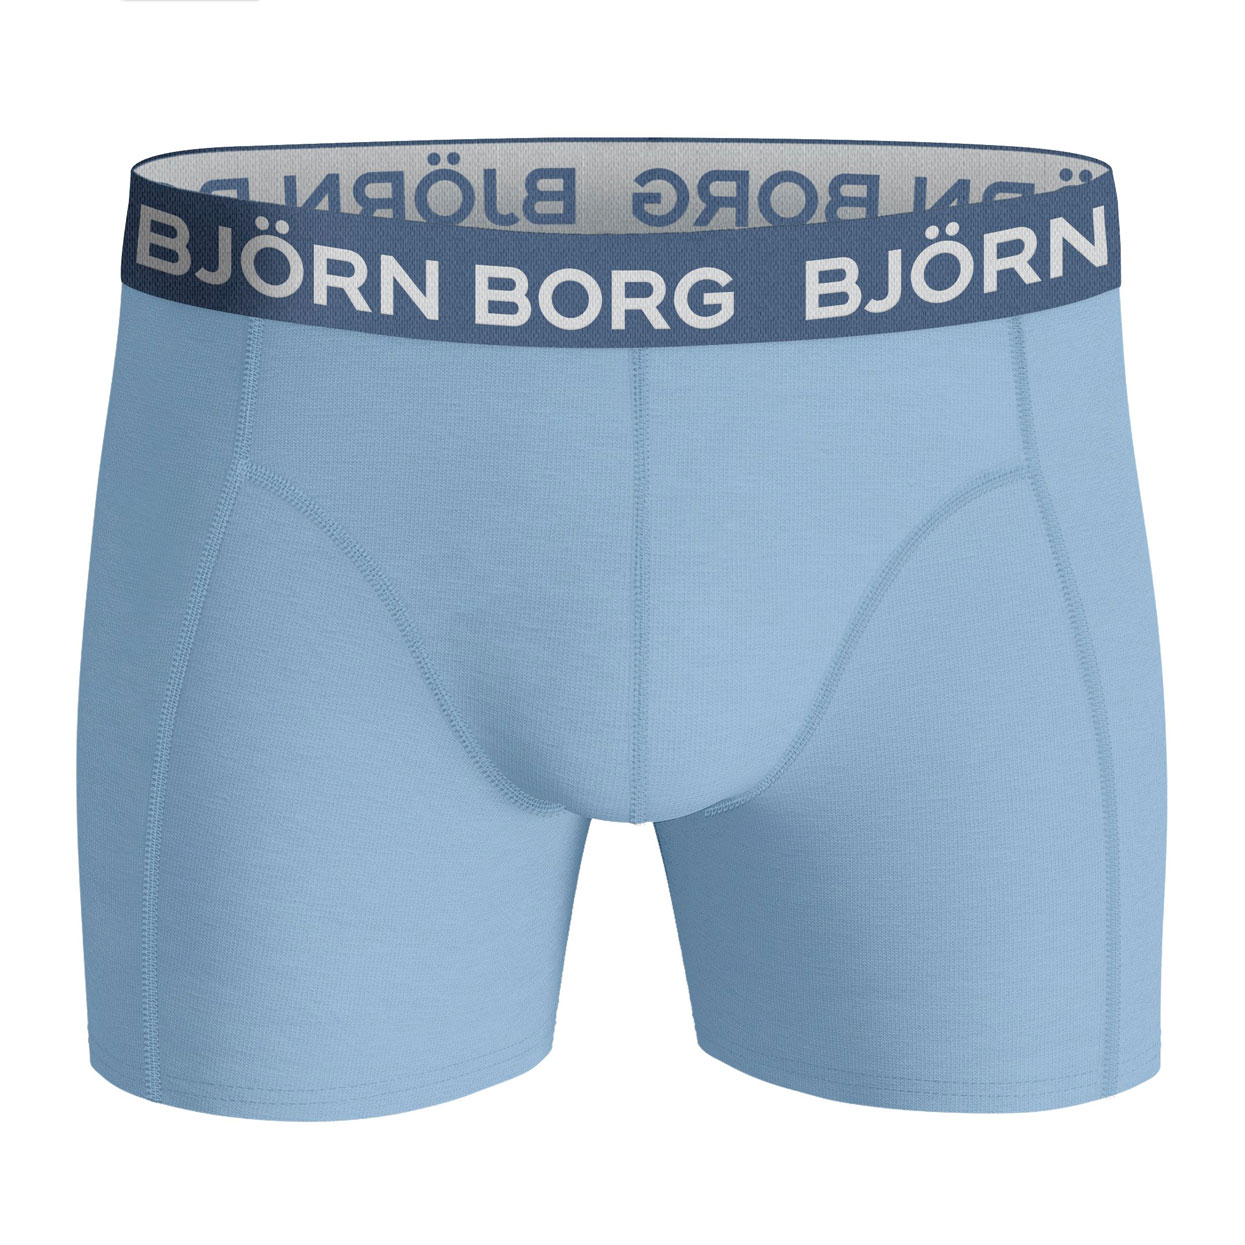 Bjorn-Borg-10002095-mp006